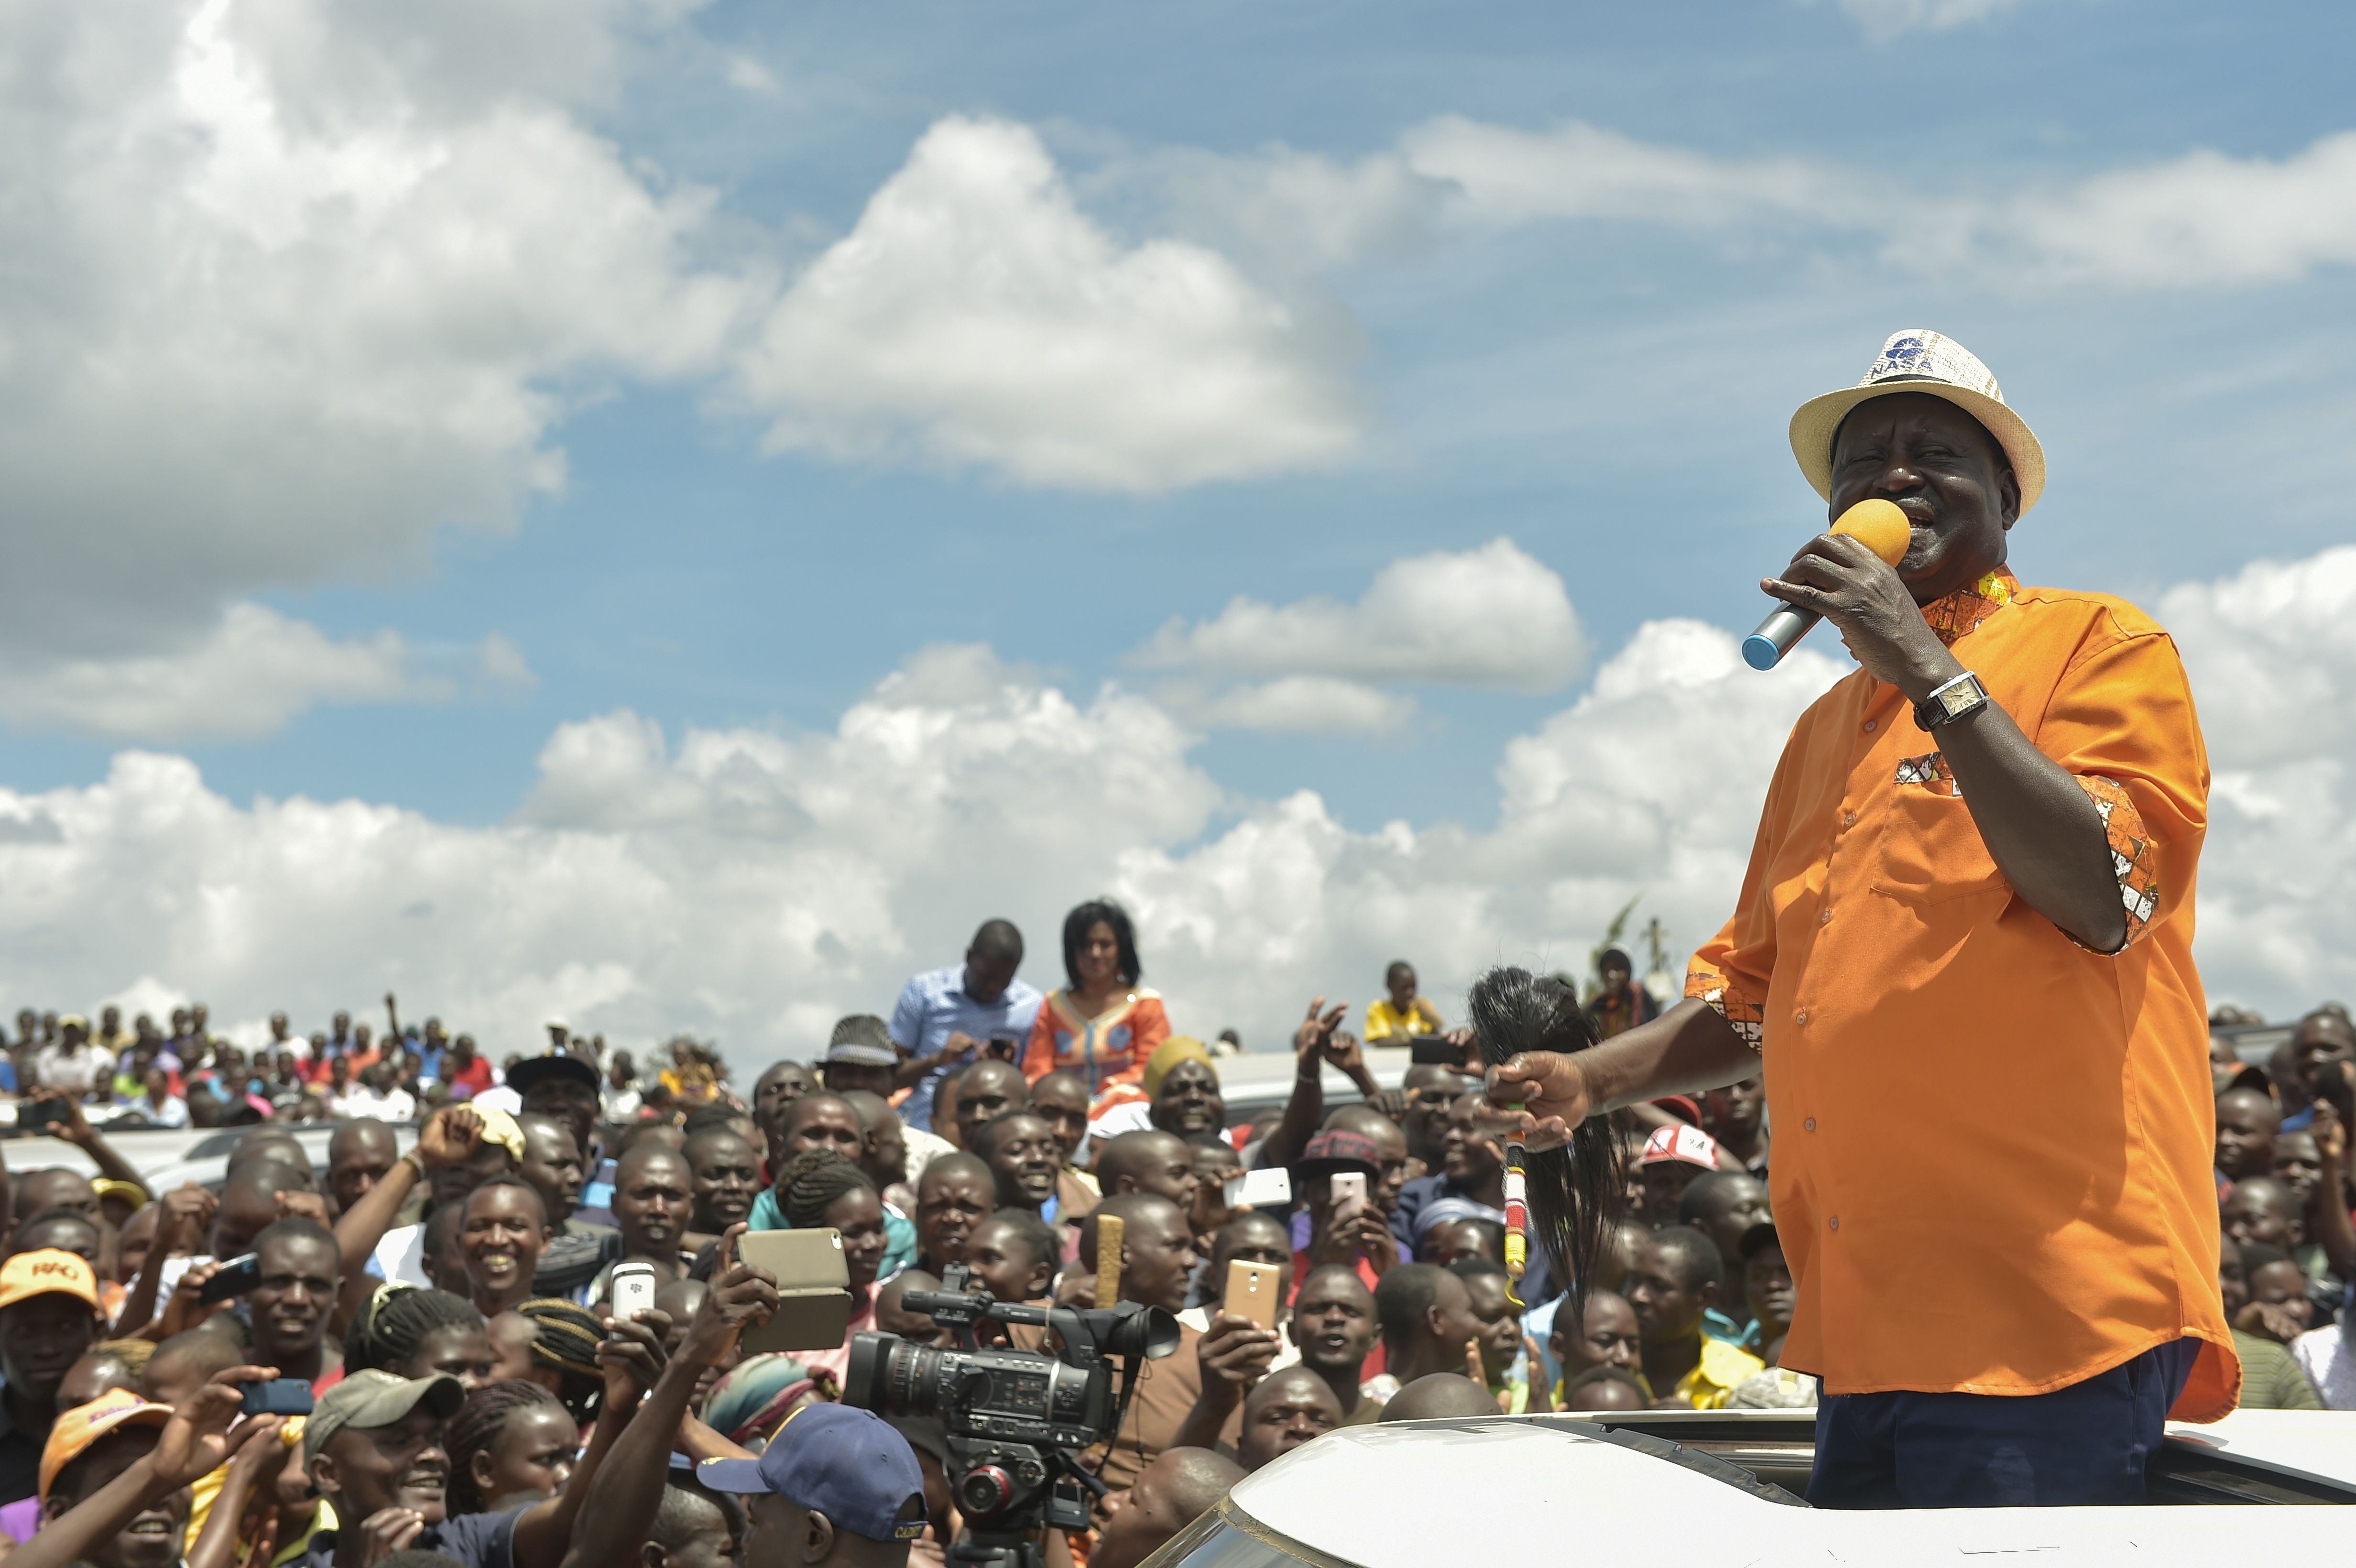 رايلا اودينجا وسط حشد من أنصاره المعارضين فى كينيا